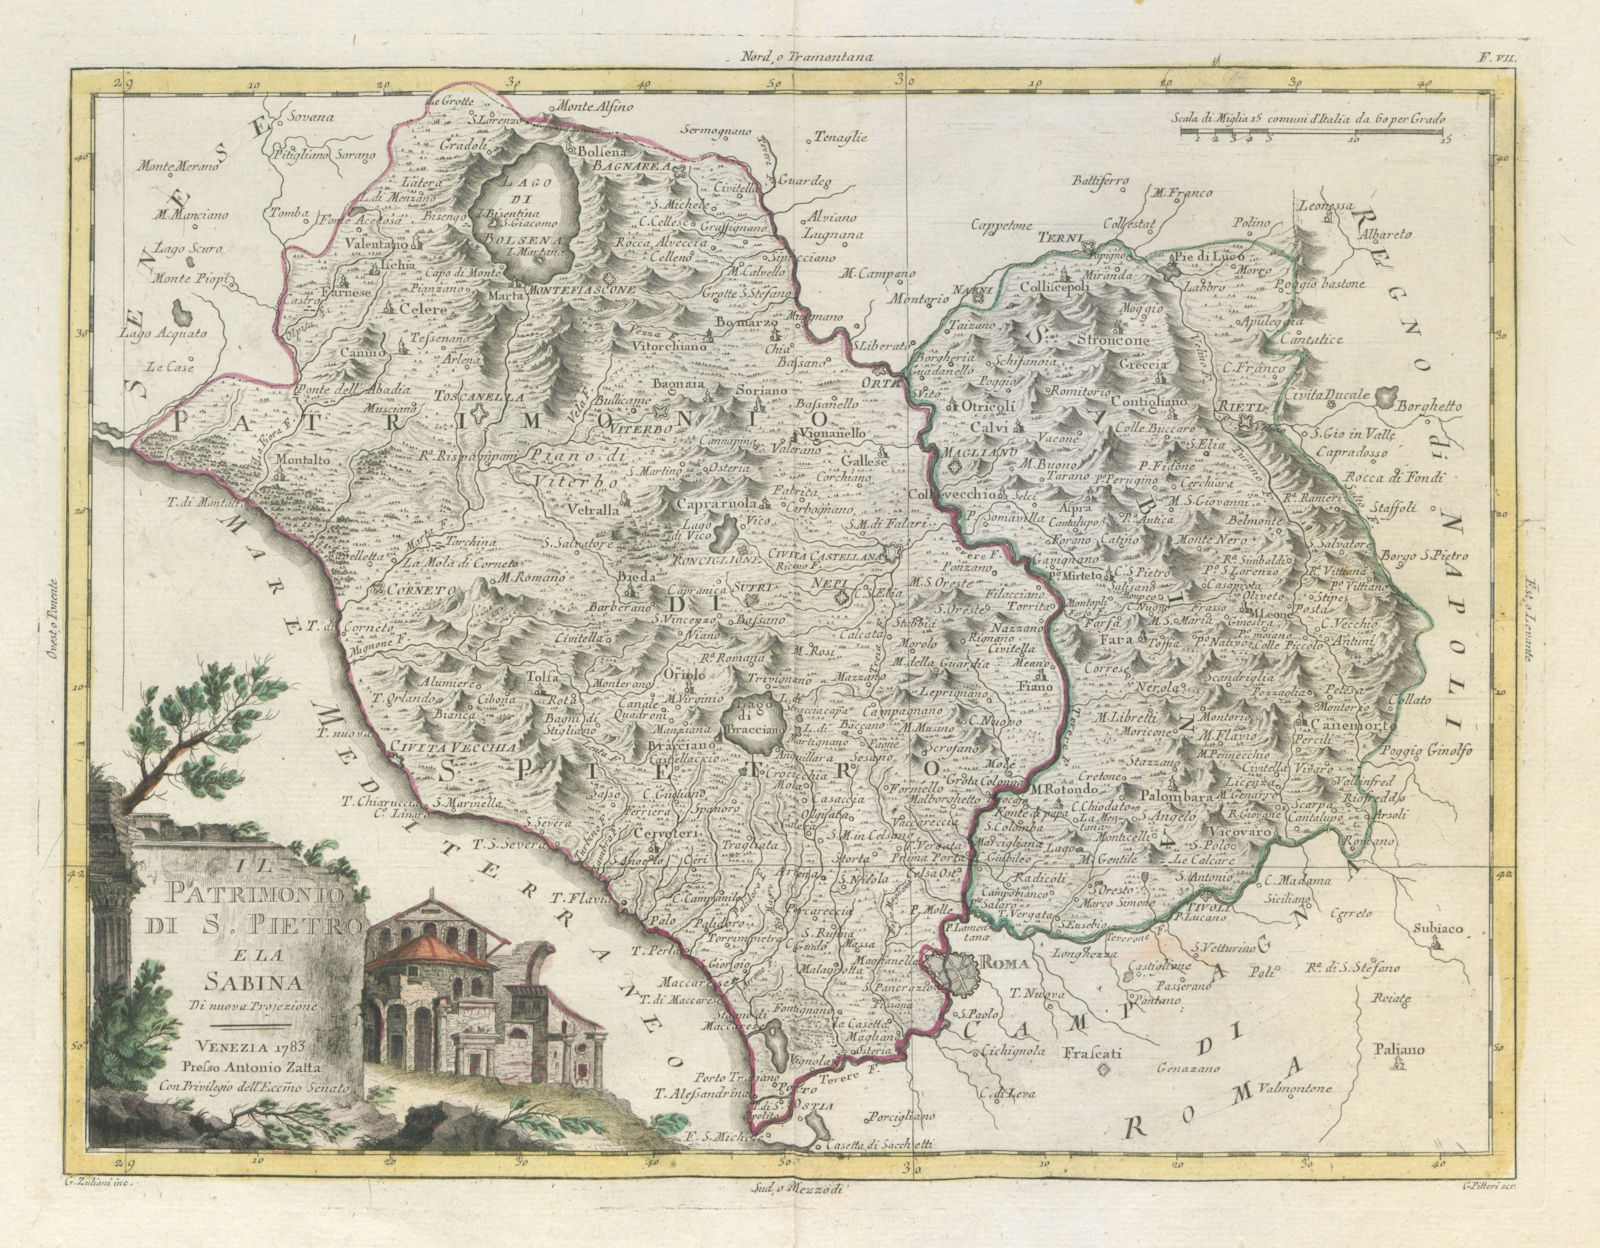 "Il Patrimonio di S. Pietro e la Sabina". Papal states / Lazio. ZATTA 1784 map